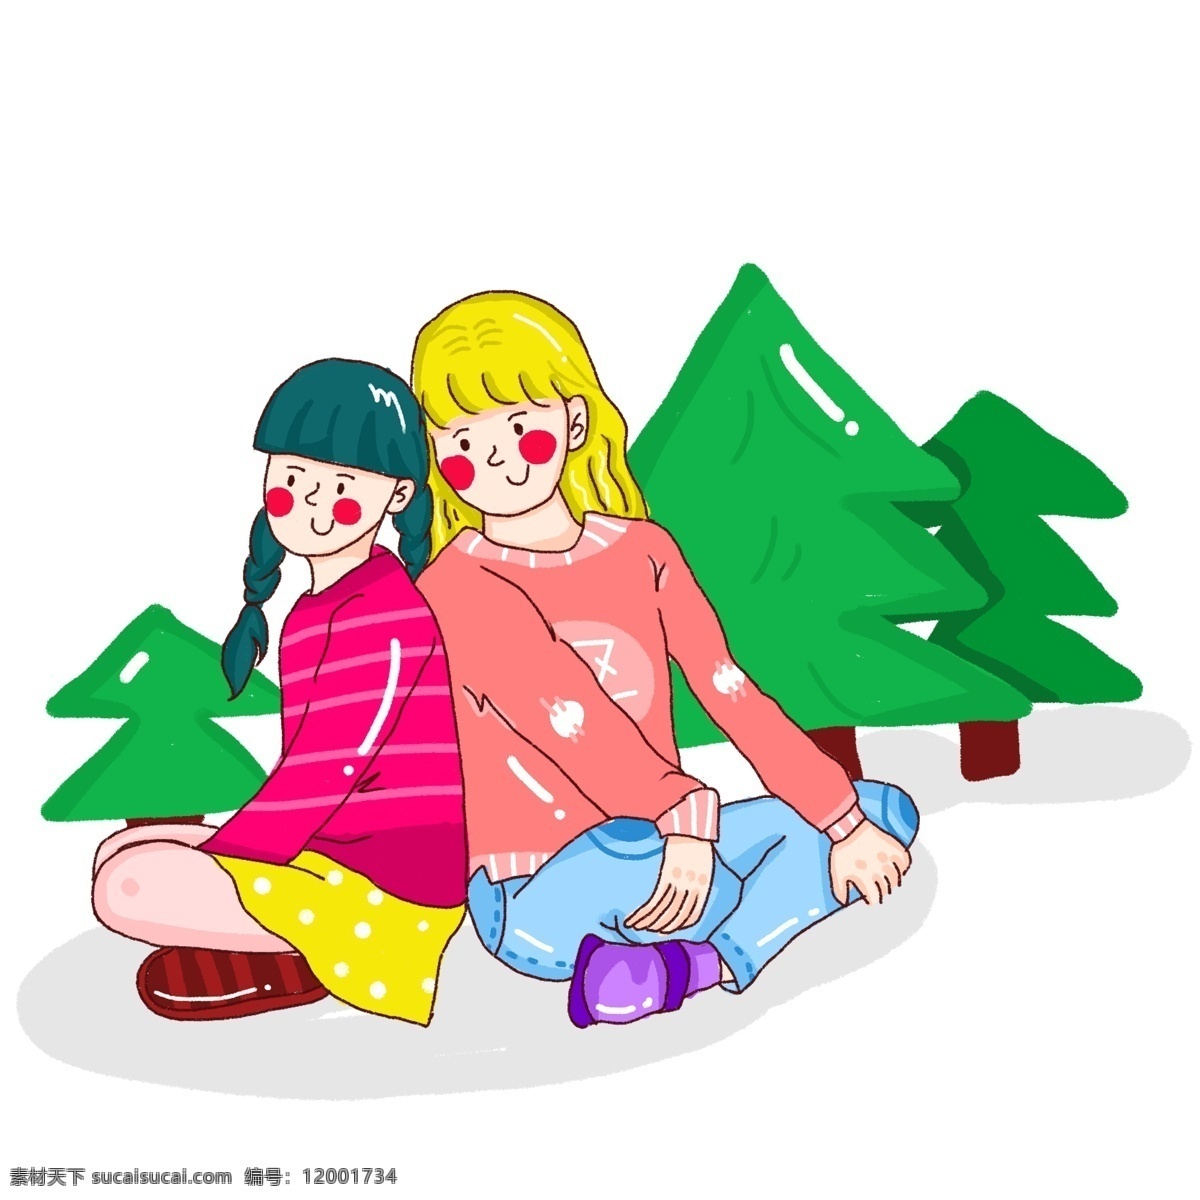 卡通 手绘 插图 可爱 姐妹 源文件 插画 森林 绿色 红色 少女 树木 黄色 害羞 背靠背 美